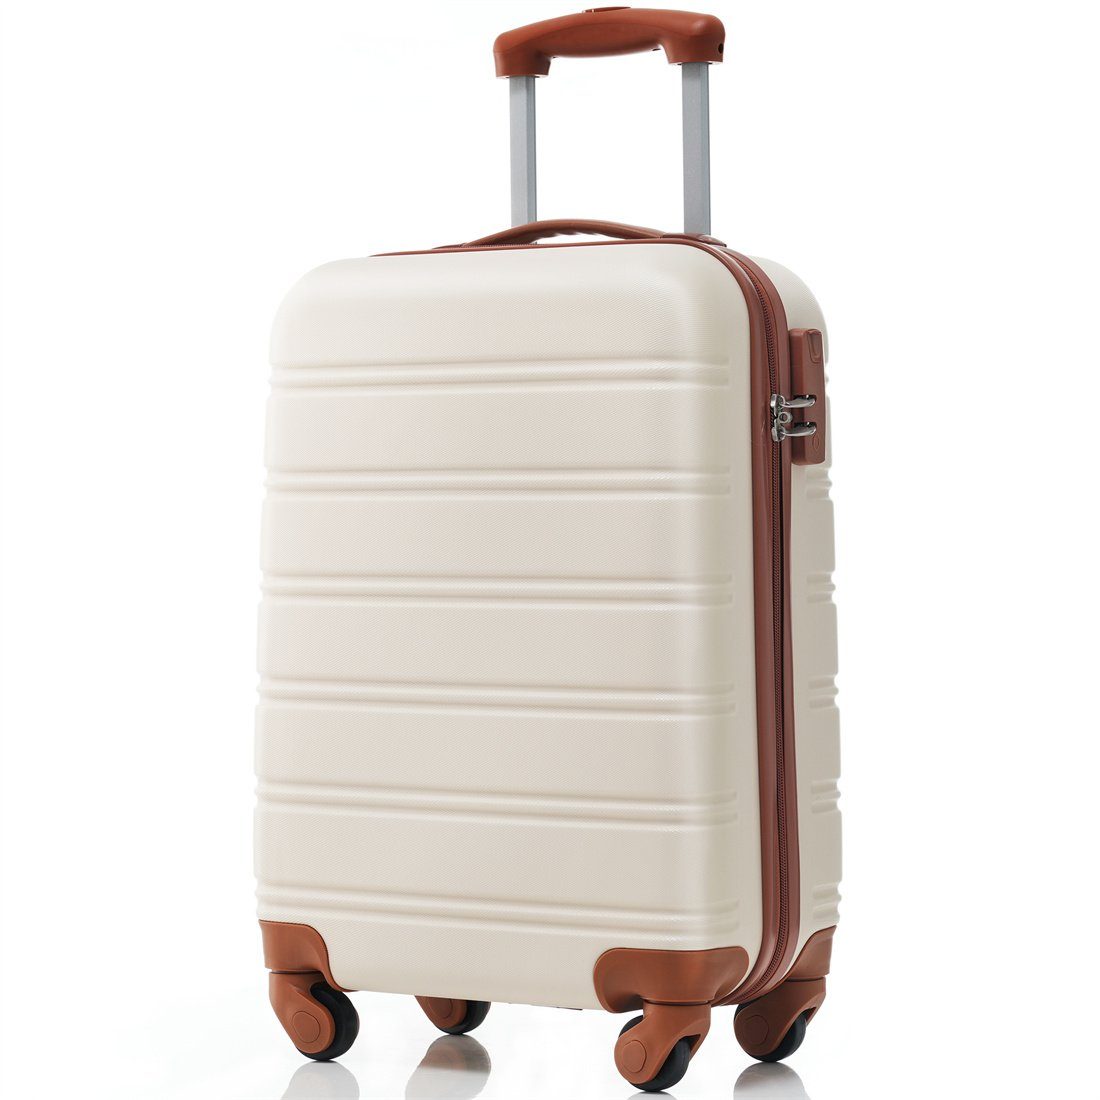 DÖRÖY Koffer Hartschalen-Koffer,Rollkoffer,Reisekoffer,55*36*22.5cm,cremeweiß+braun